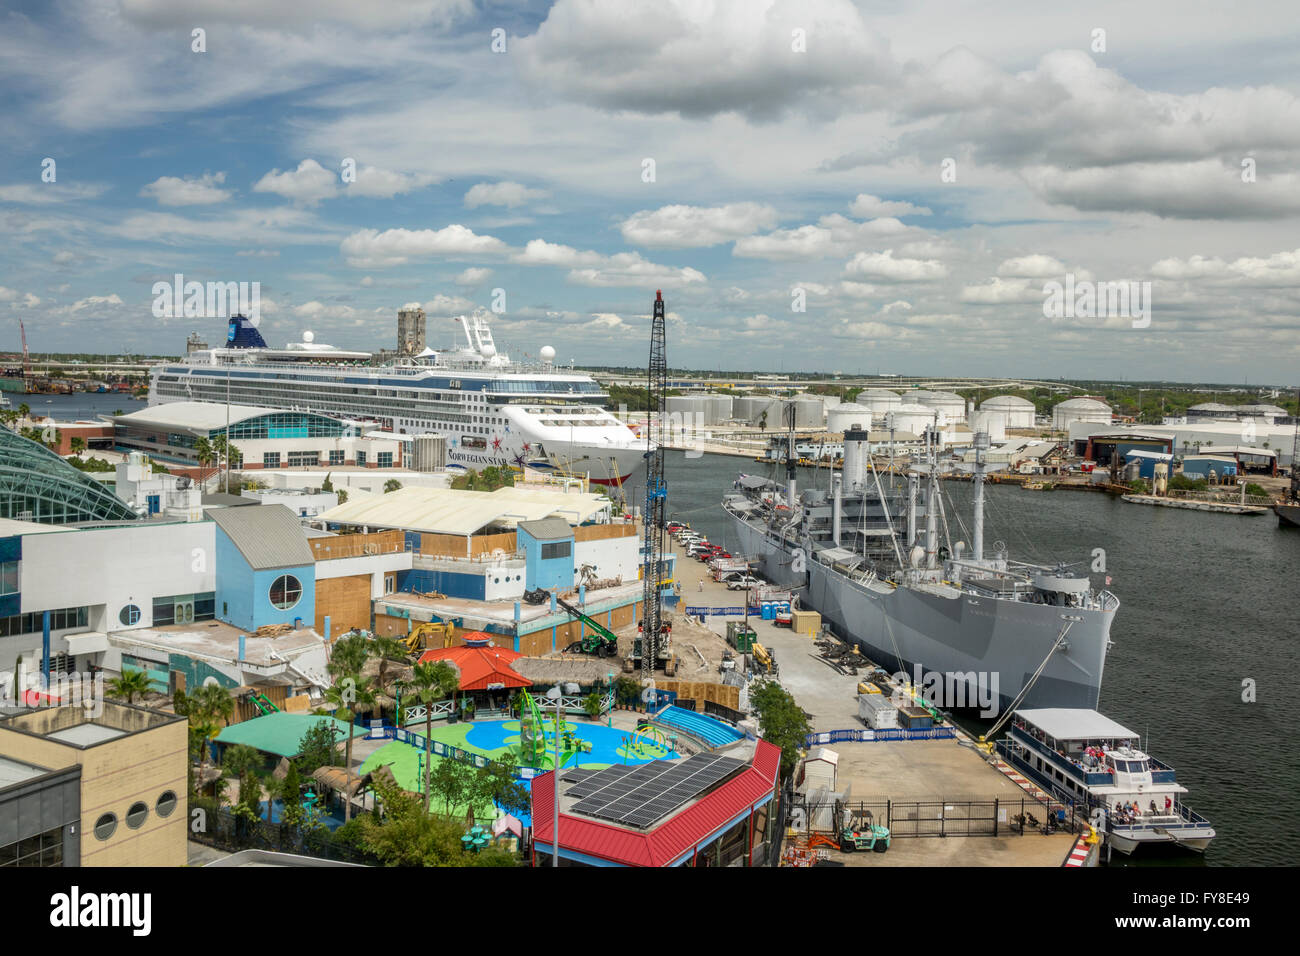 La terminal portuaria de cruceros en la Bahía de Tampa con la estrella noruega y Victoria Americana los buques en el puerto Foto de stock